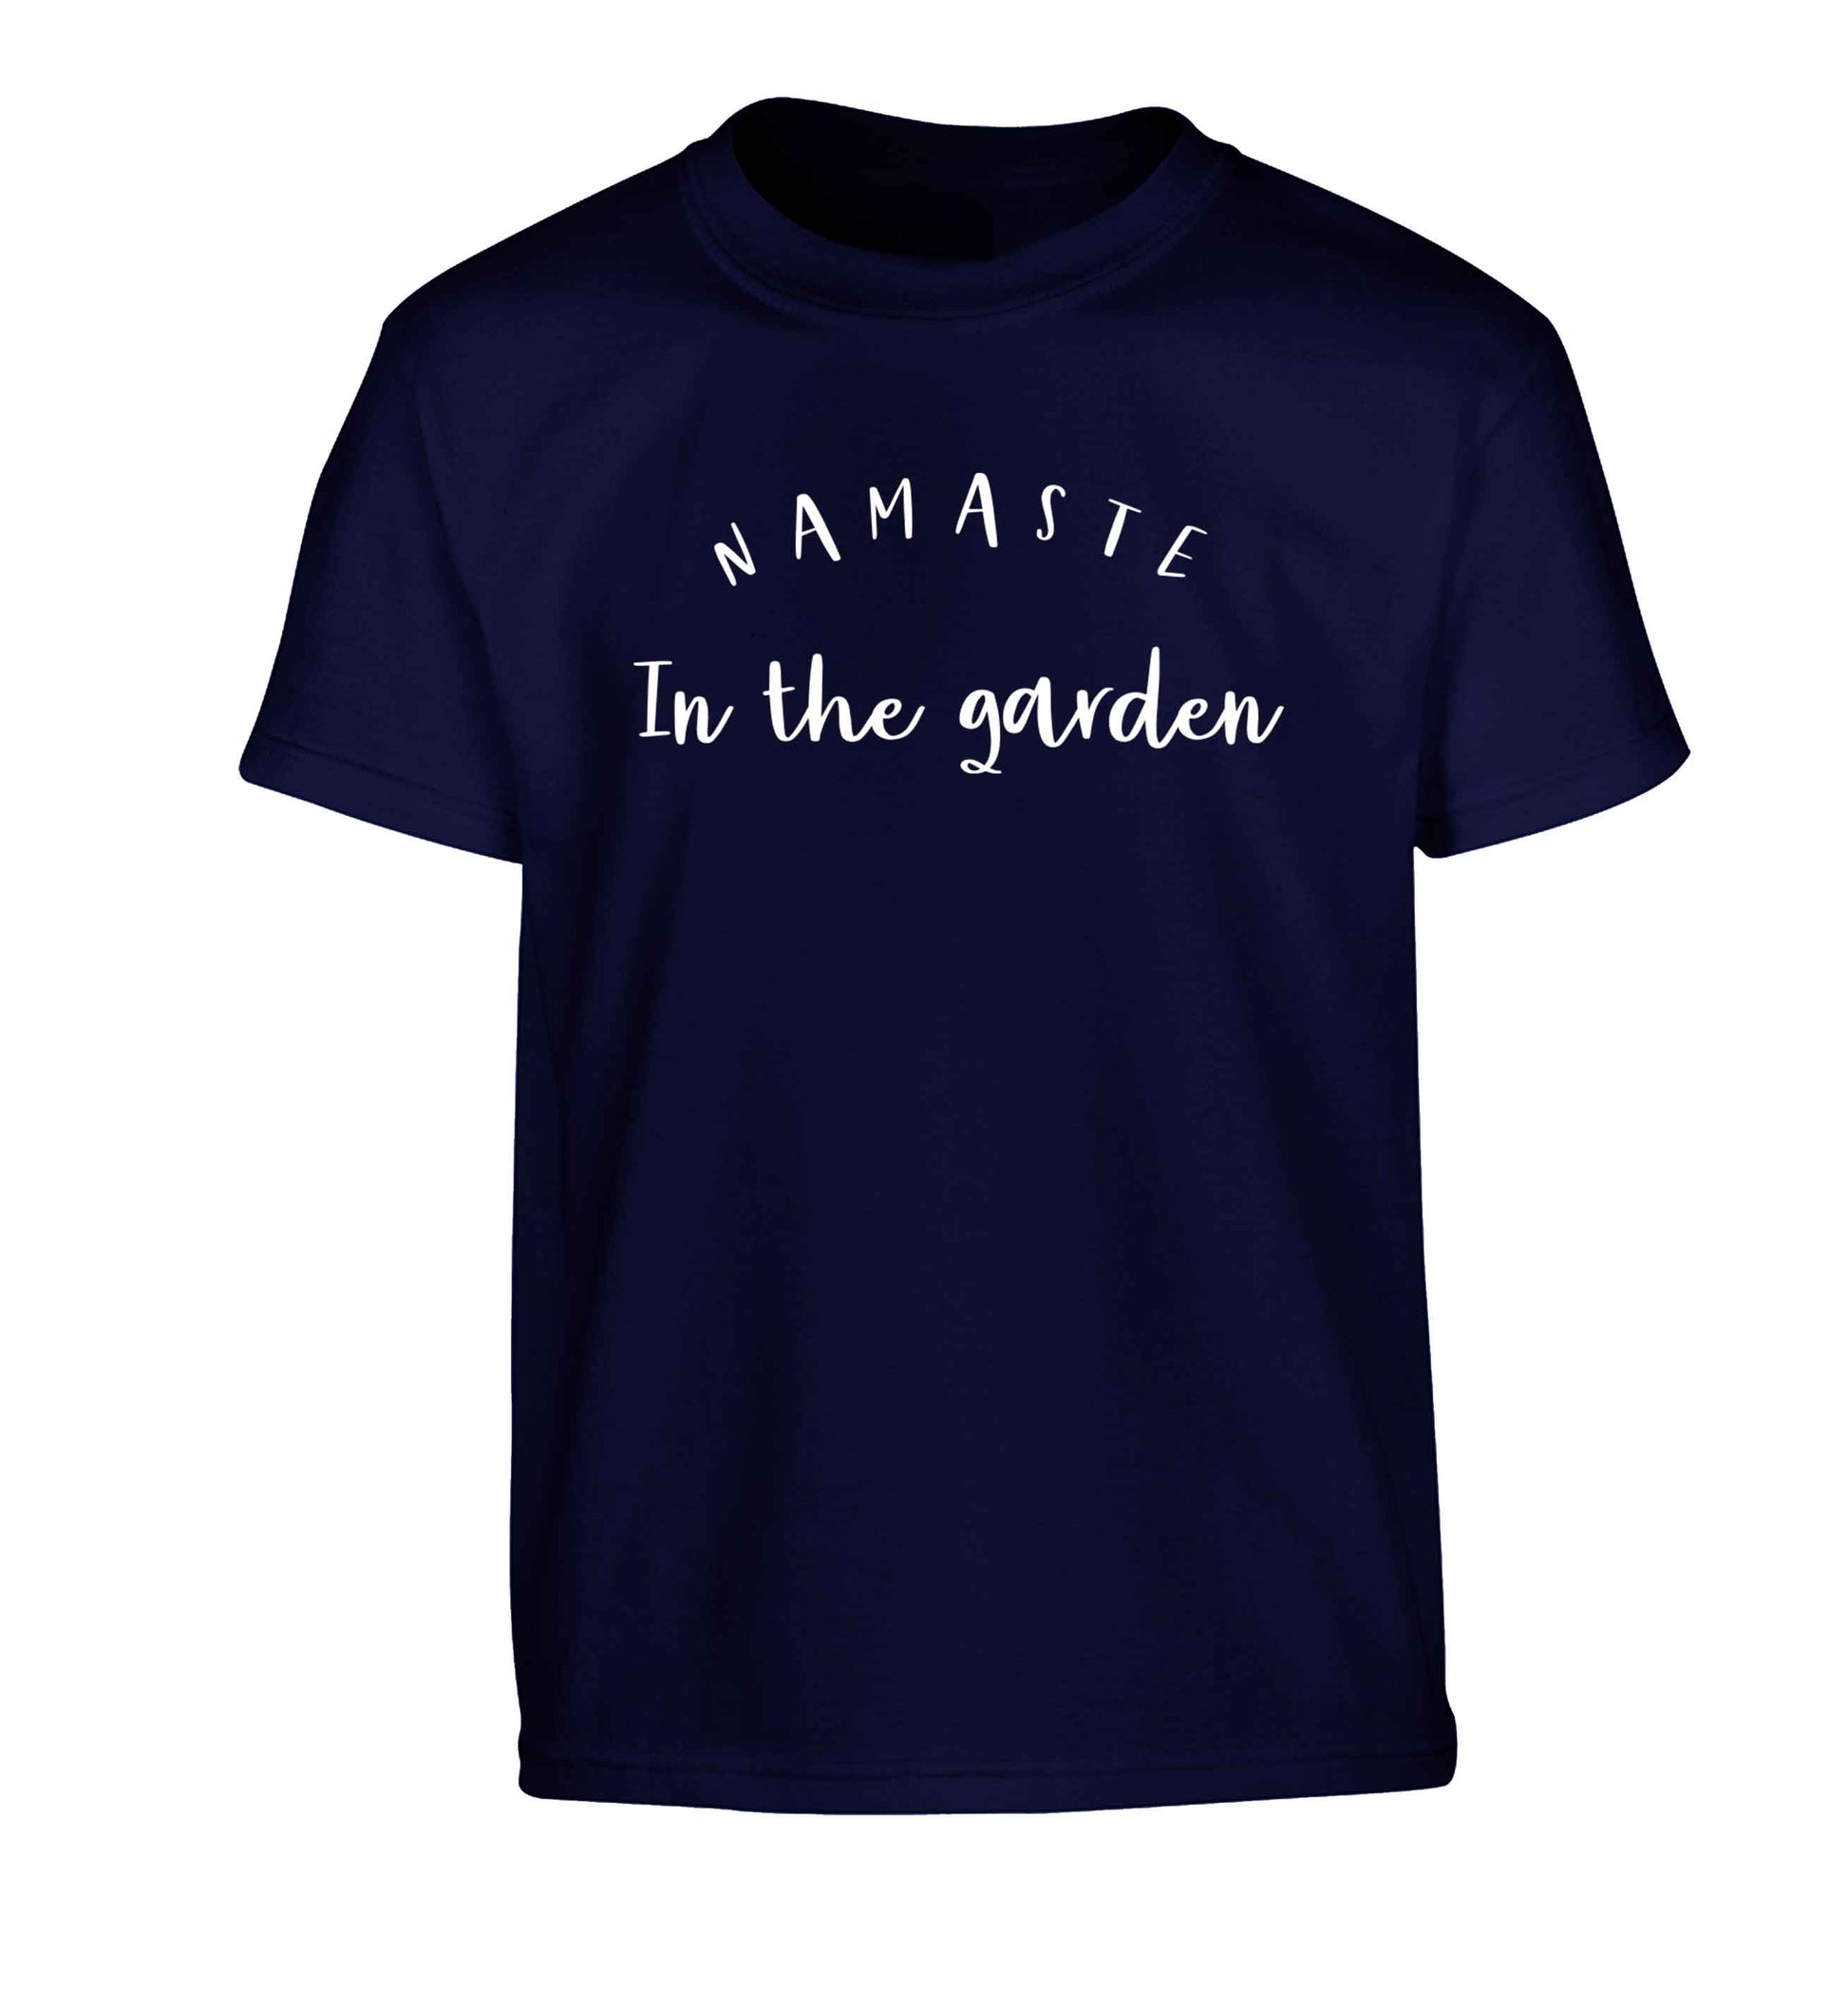 Namaste in the garden Children's navy Tshirt 12-13 Years